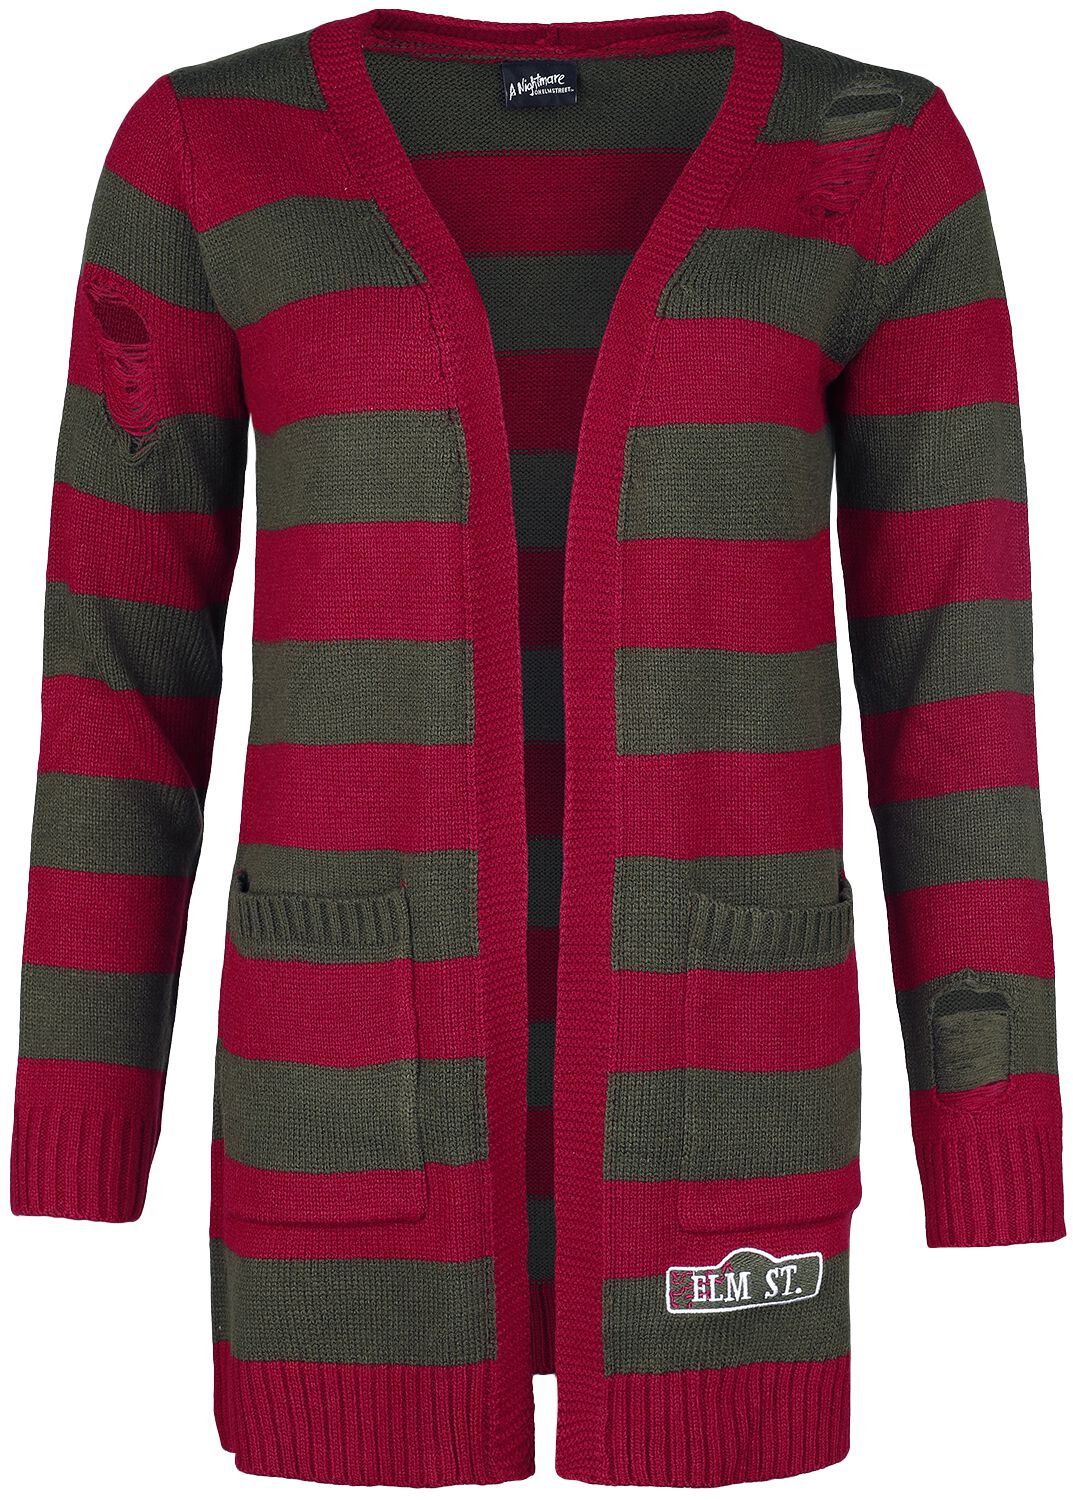 A Nightmare on Elm Street Cardigan - Elmstreet - S bis XXL - für Damen - Größe L - rot/grün  - EMP exklusives Merchandise!